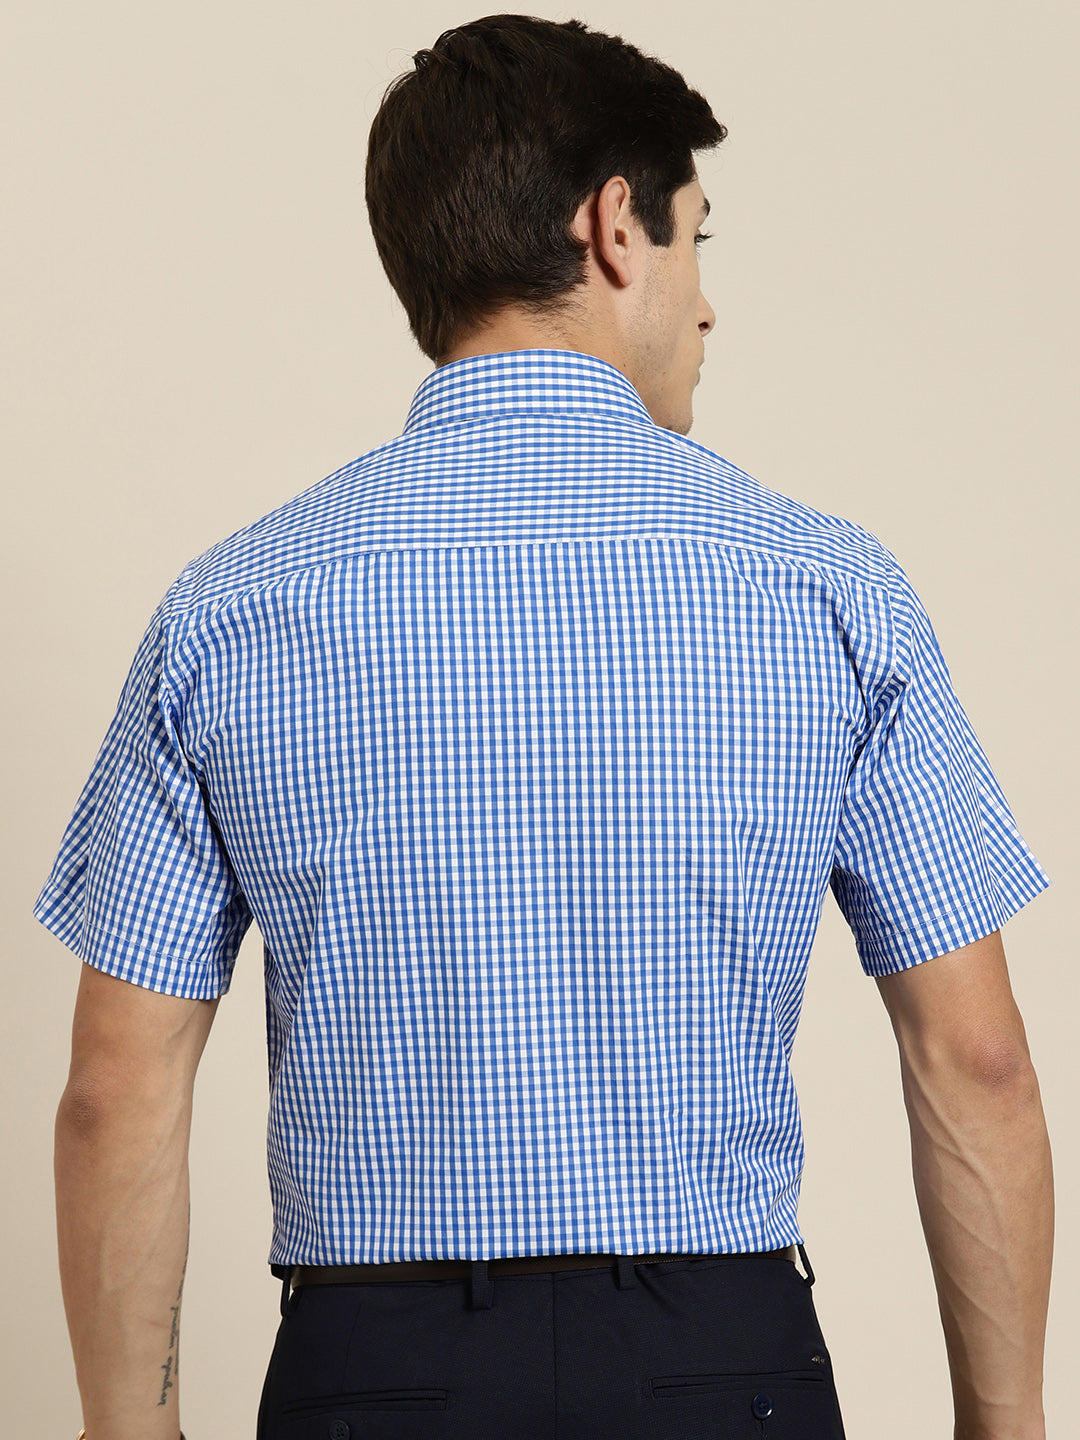 Men Blue & White Gingham Check Short Sleeve Slim fit Formal Shirt